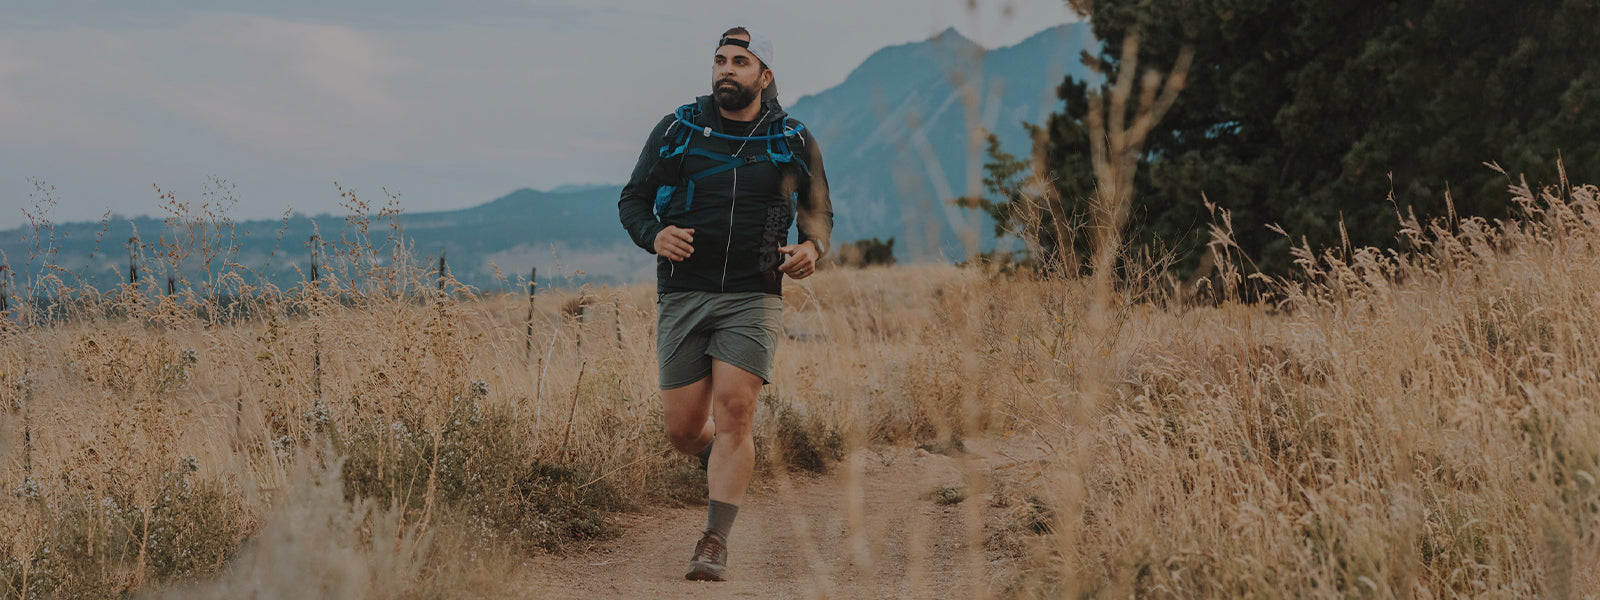 Men's Trail Running Socks header image, man running